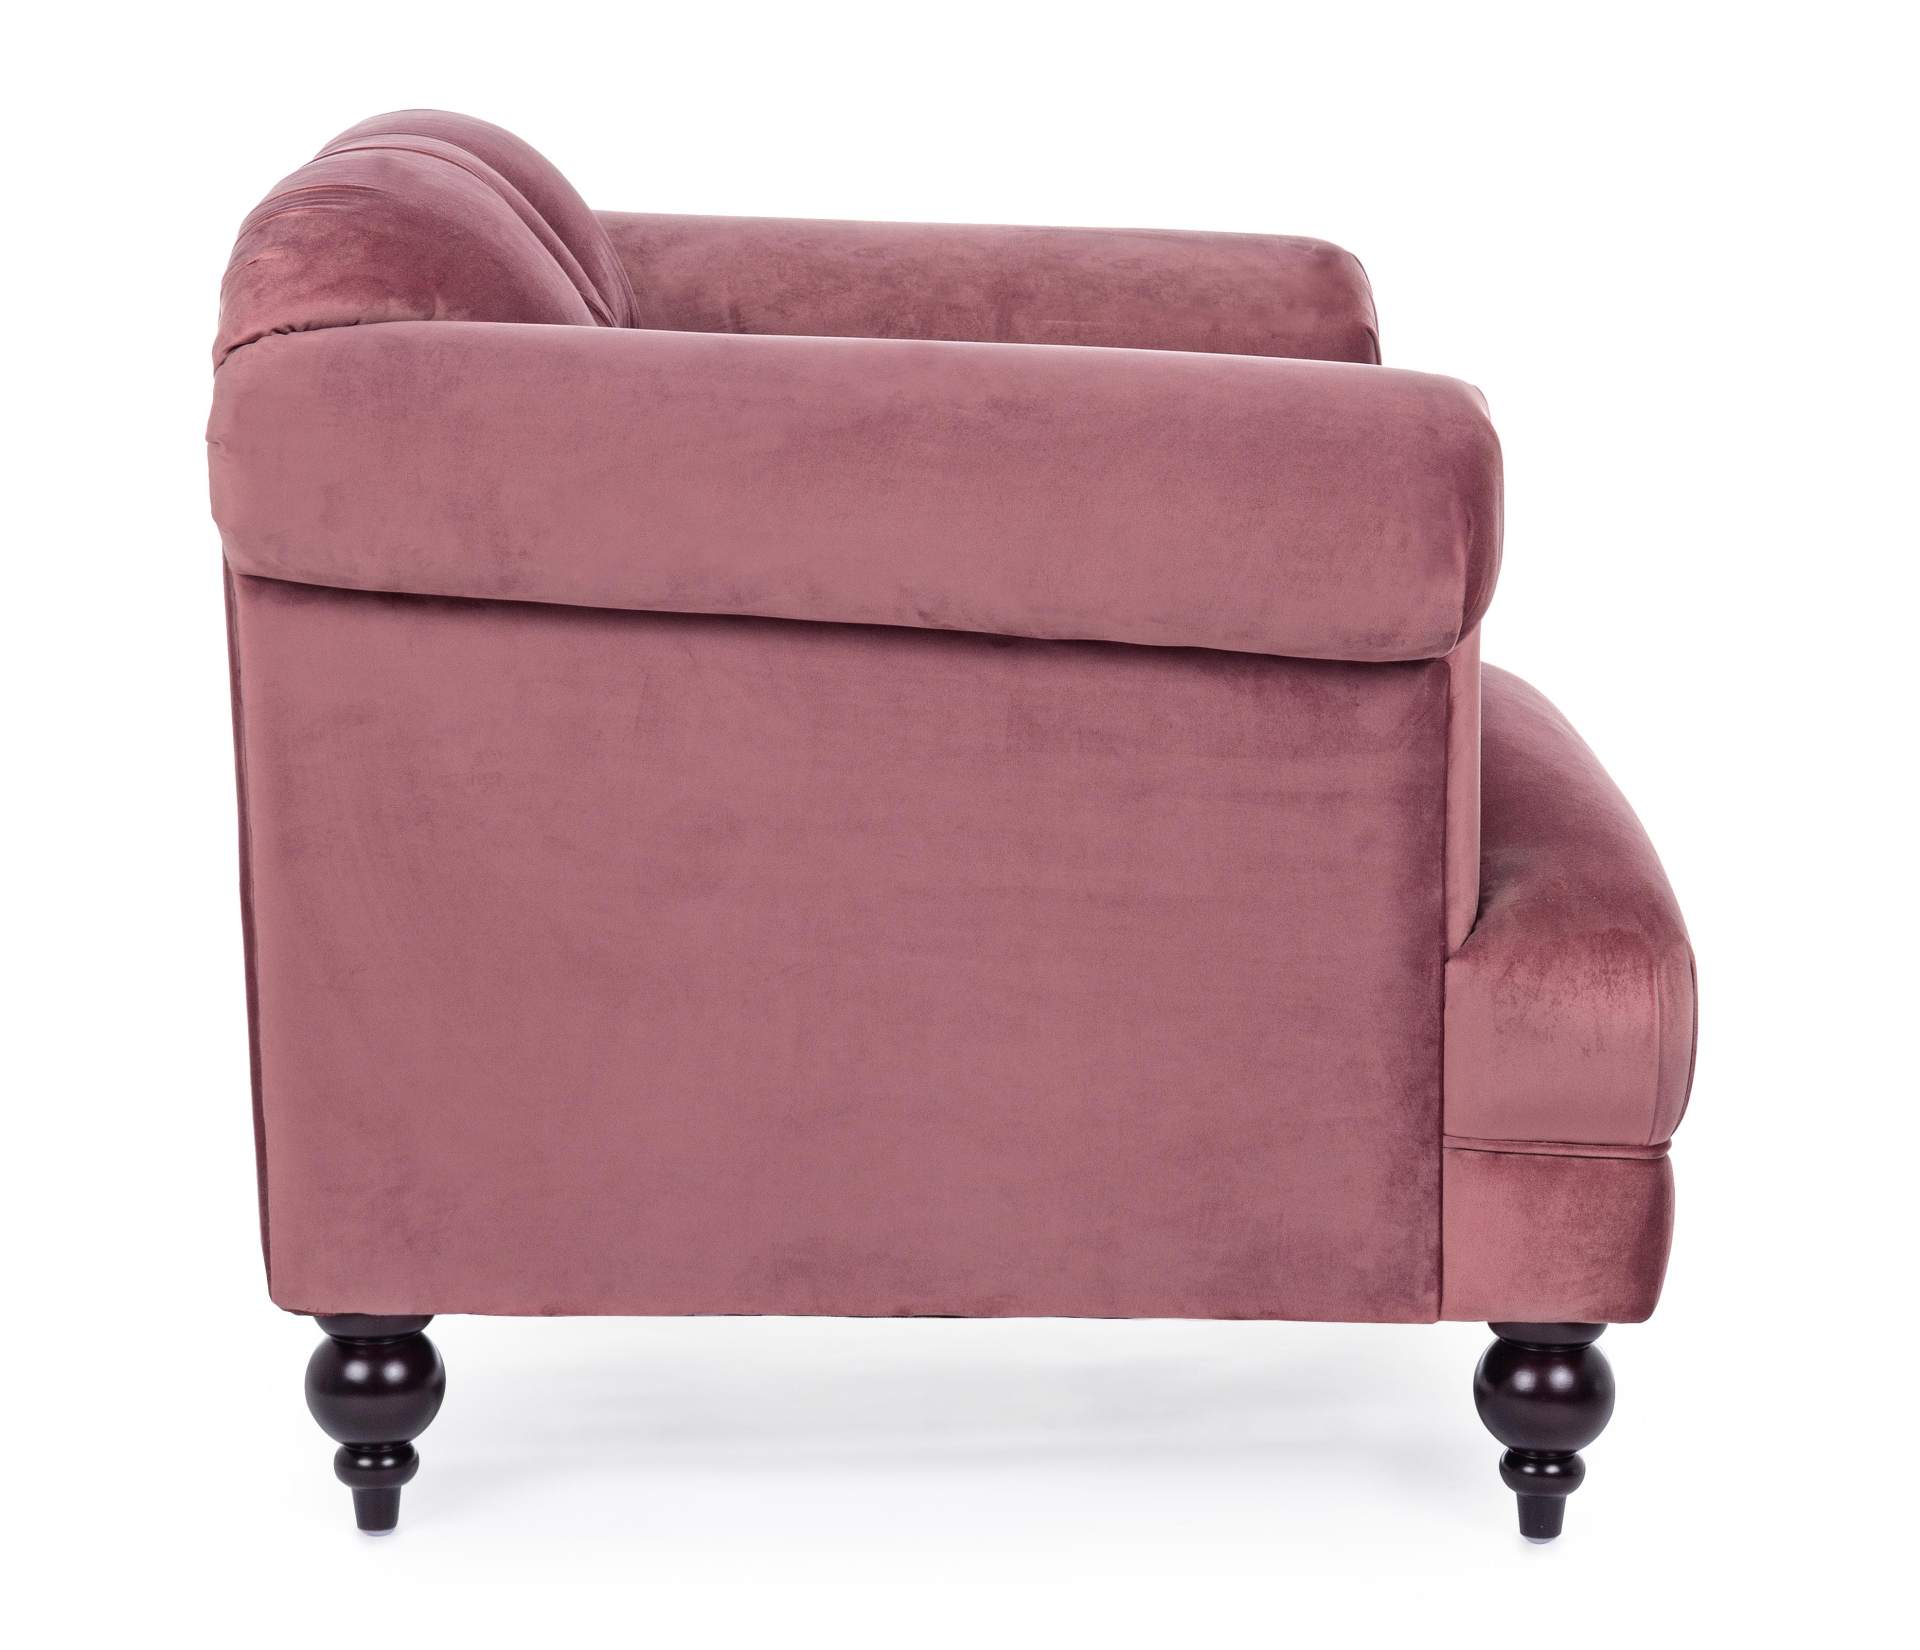 Der Sessel Blossom überzeugt mit seinem klassischen Design. Gefertigt wurde er aus Stoff in Samt-Optik, welcher einen altrosa Farbton besitzt. Das Gestell ist aus Kautschukholz und hat eine schwarze Farbe. Der Sessel besitzt eine Sitzhöhe von 44 cm. Die B